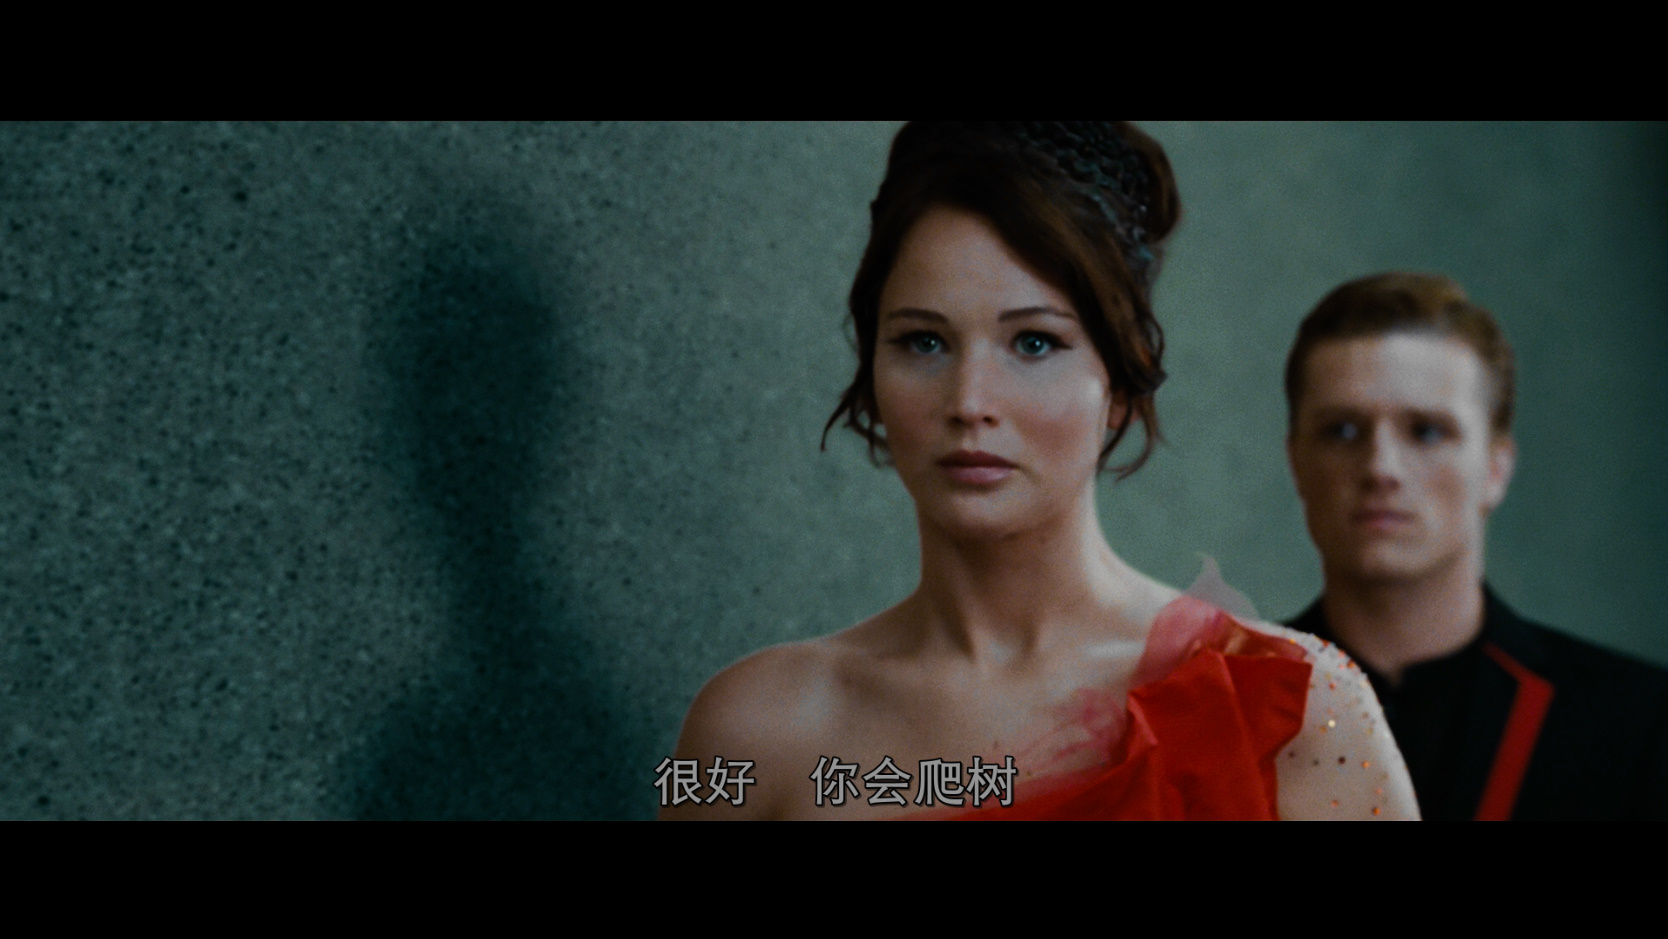 饥饿游戏 [意版高码Dolby Vision原盘] [DIY 简繁+简繁英双语字幕] The Hunger Games 2012 2160p ITA UHD Blu-ray HEVC TrueHD Atmos 7.1 -PWt@OurBits     [85.05 GB]-6.jpg